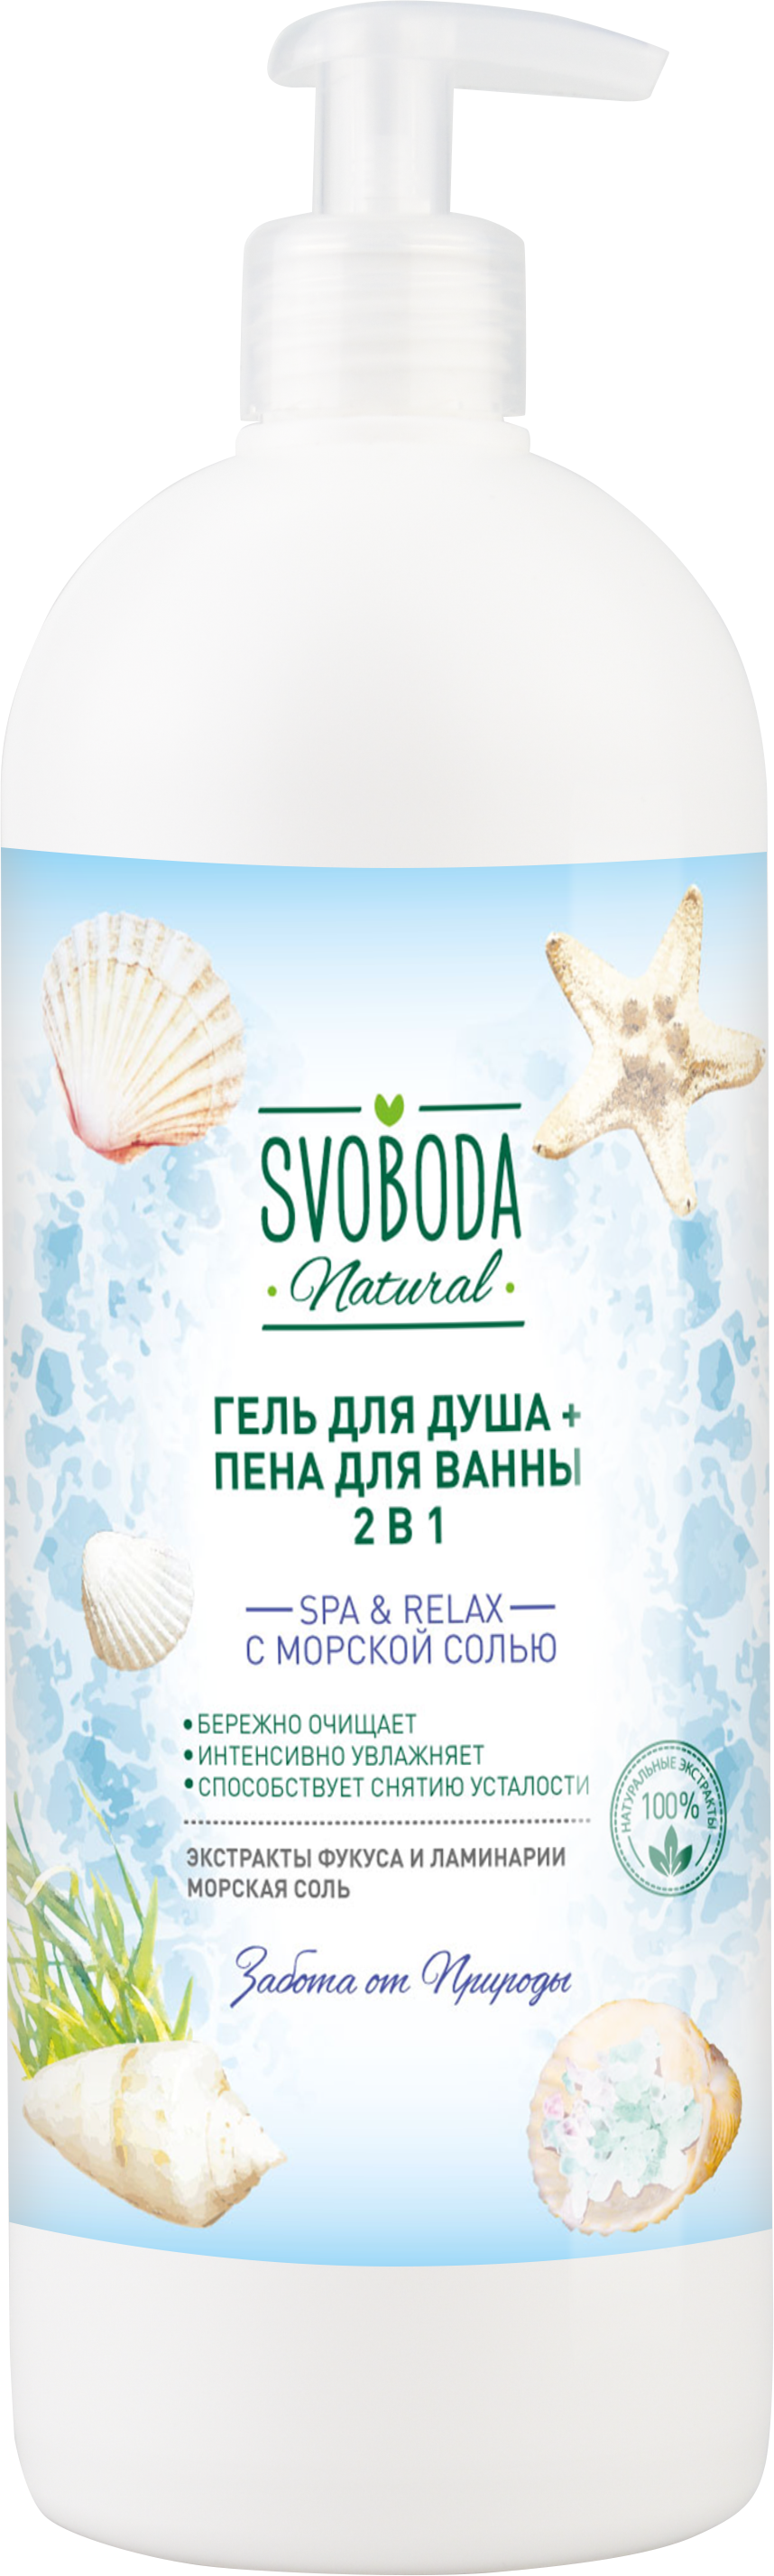 Гель для душа + Пена для ванны 2 в 1 Svoboda SPA & RELAX с морской солью